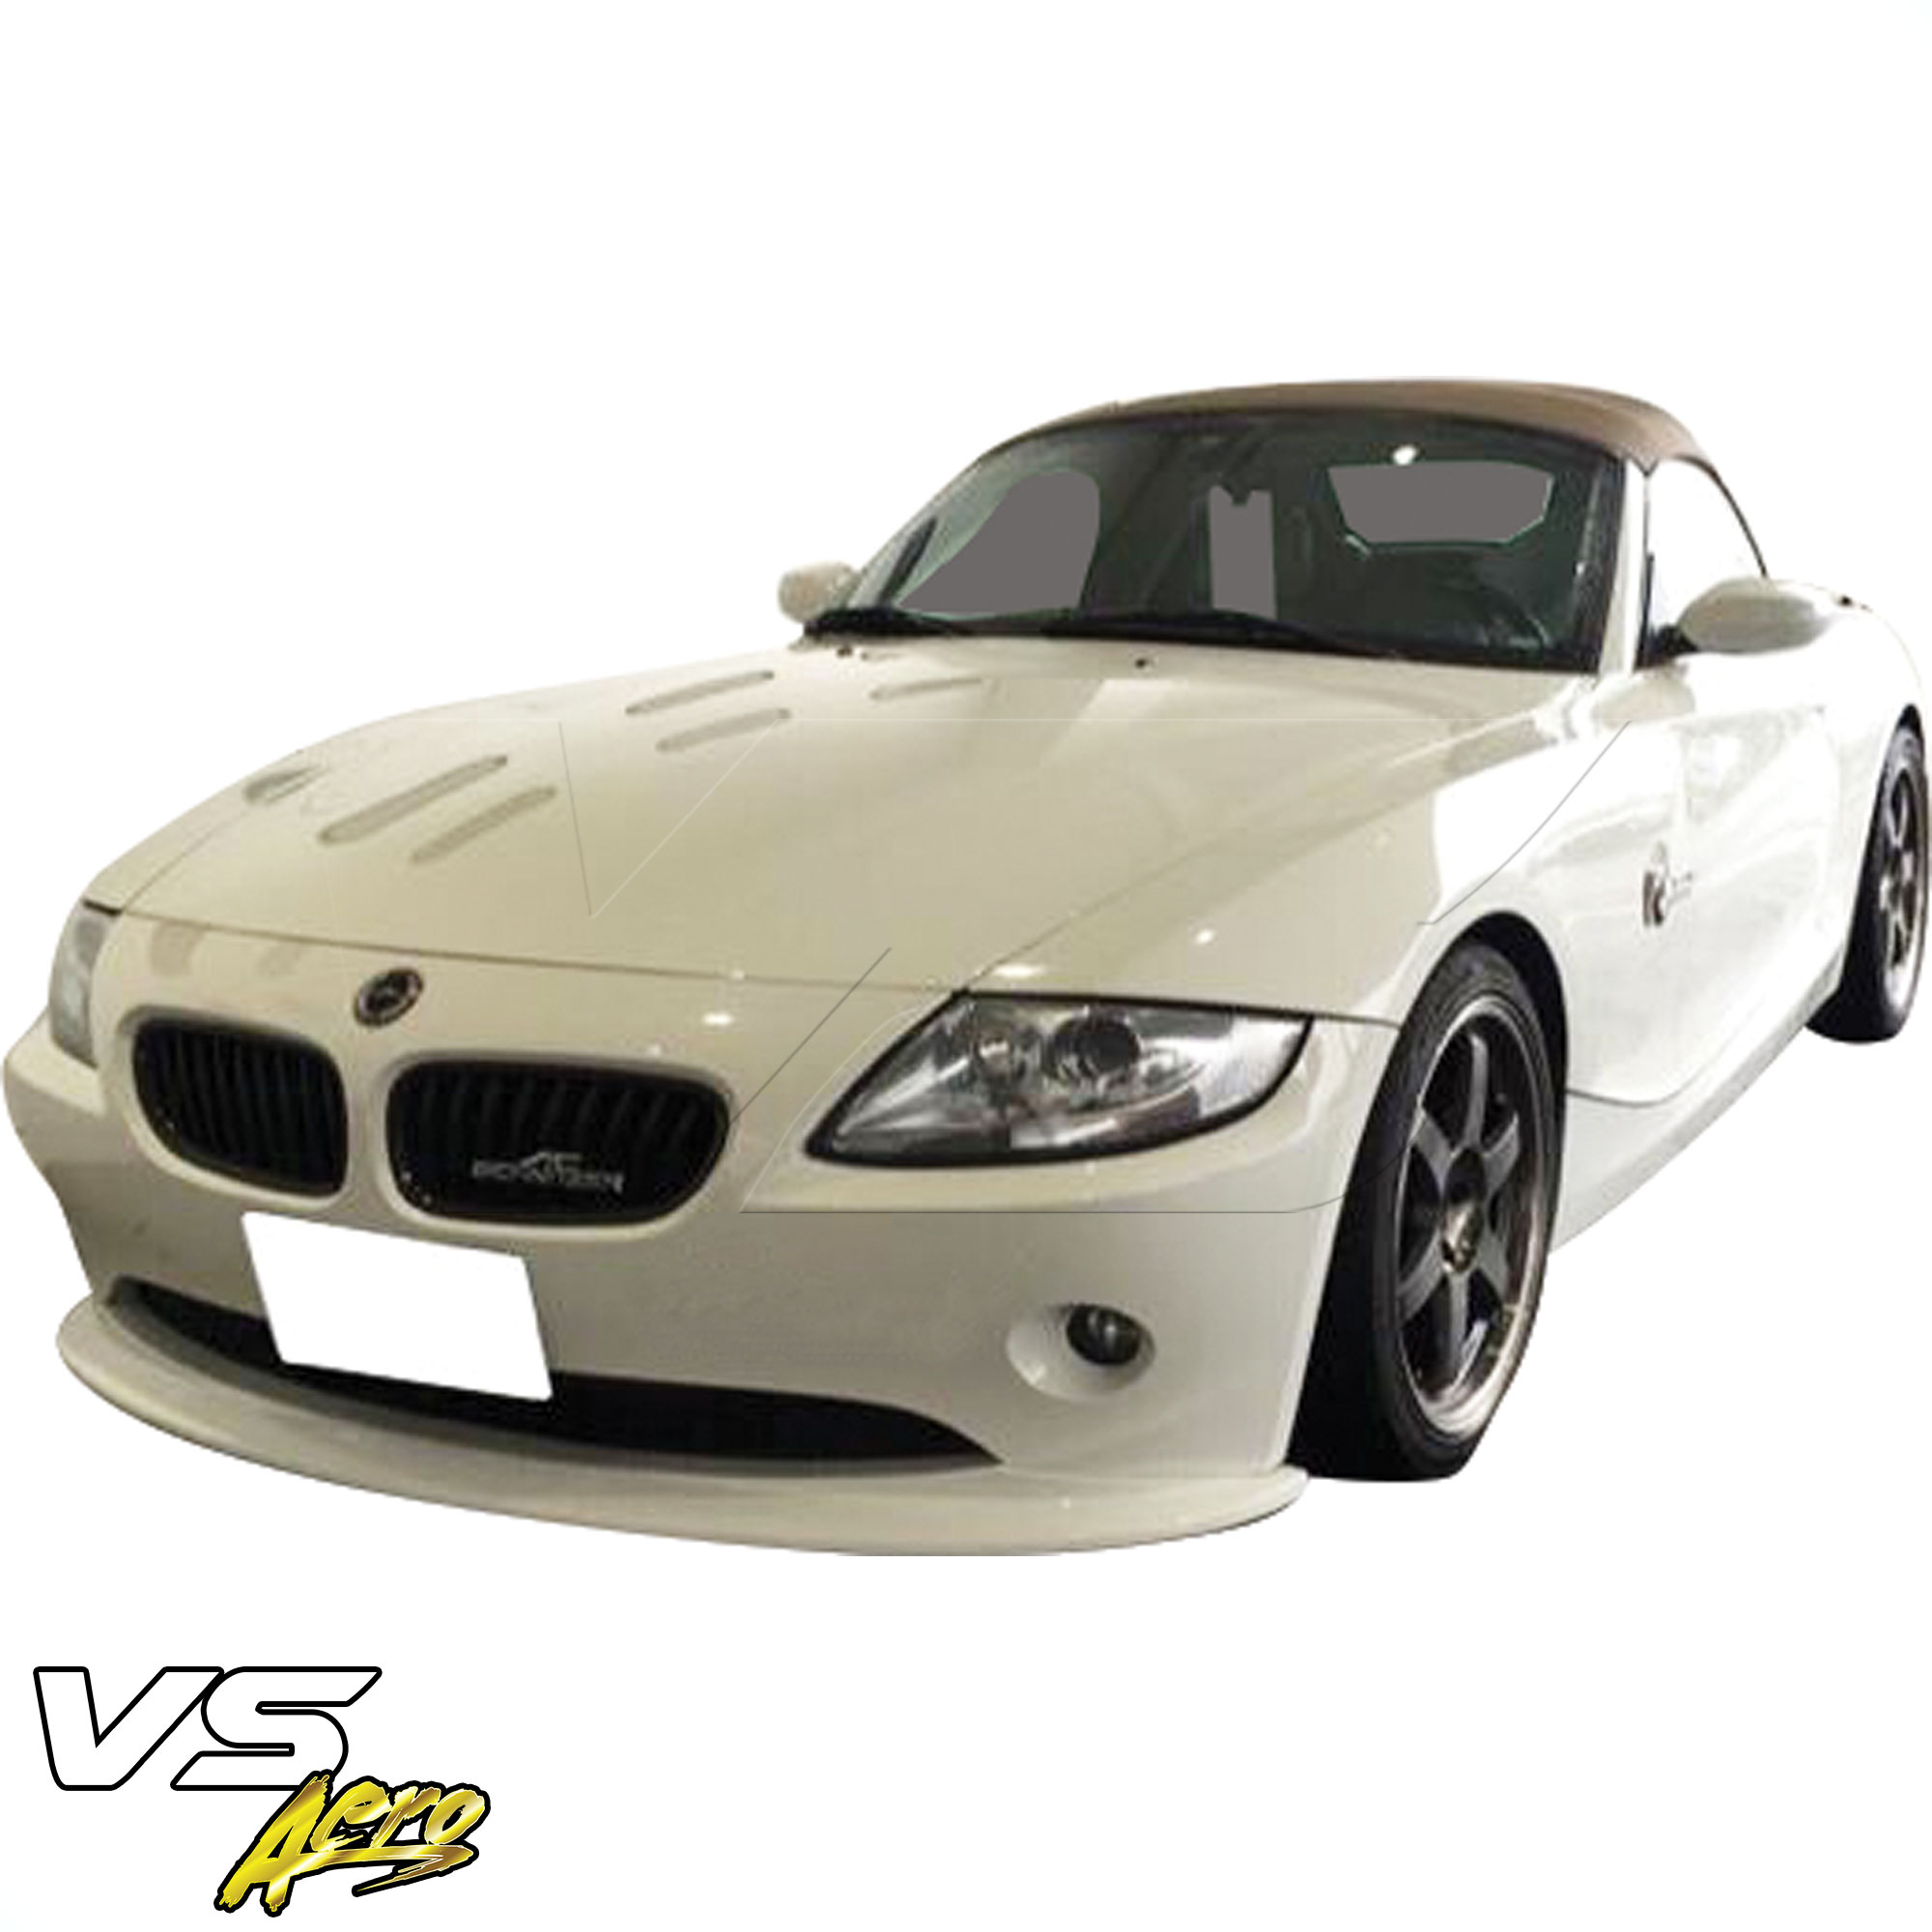 VSaero FRP HAMA Front Lip Valance > BMW Z4 E85 2003-2005 - Image 4